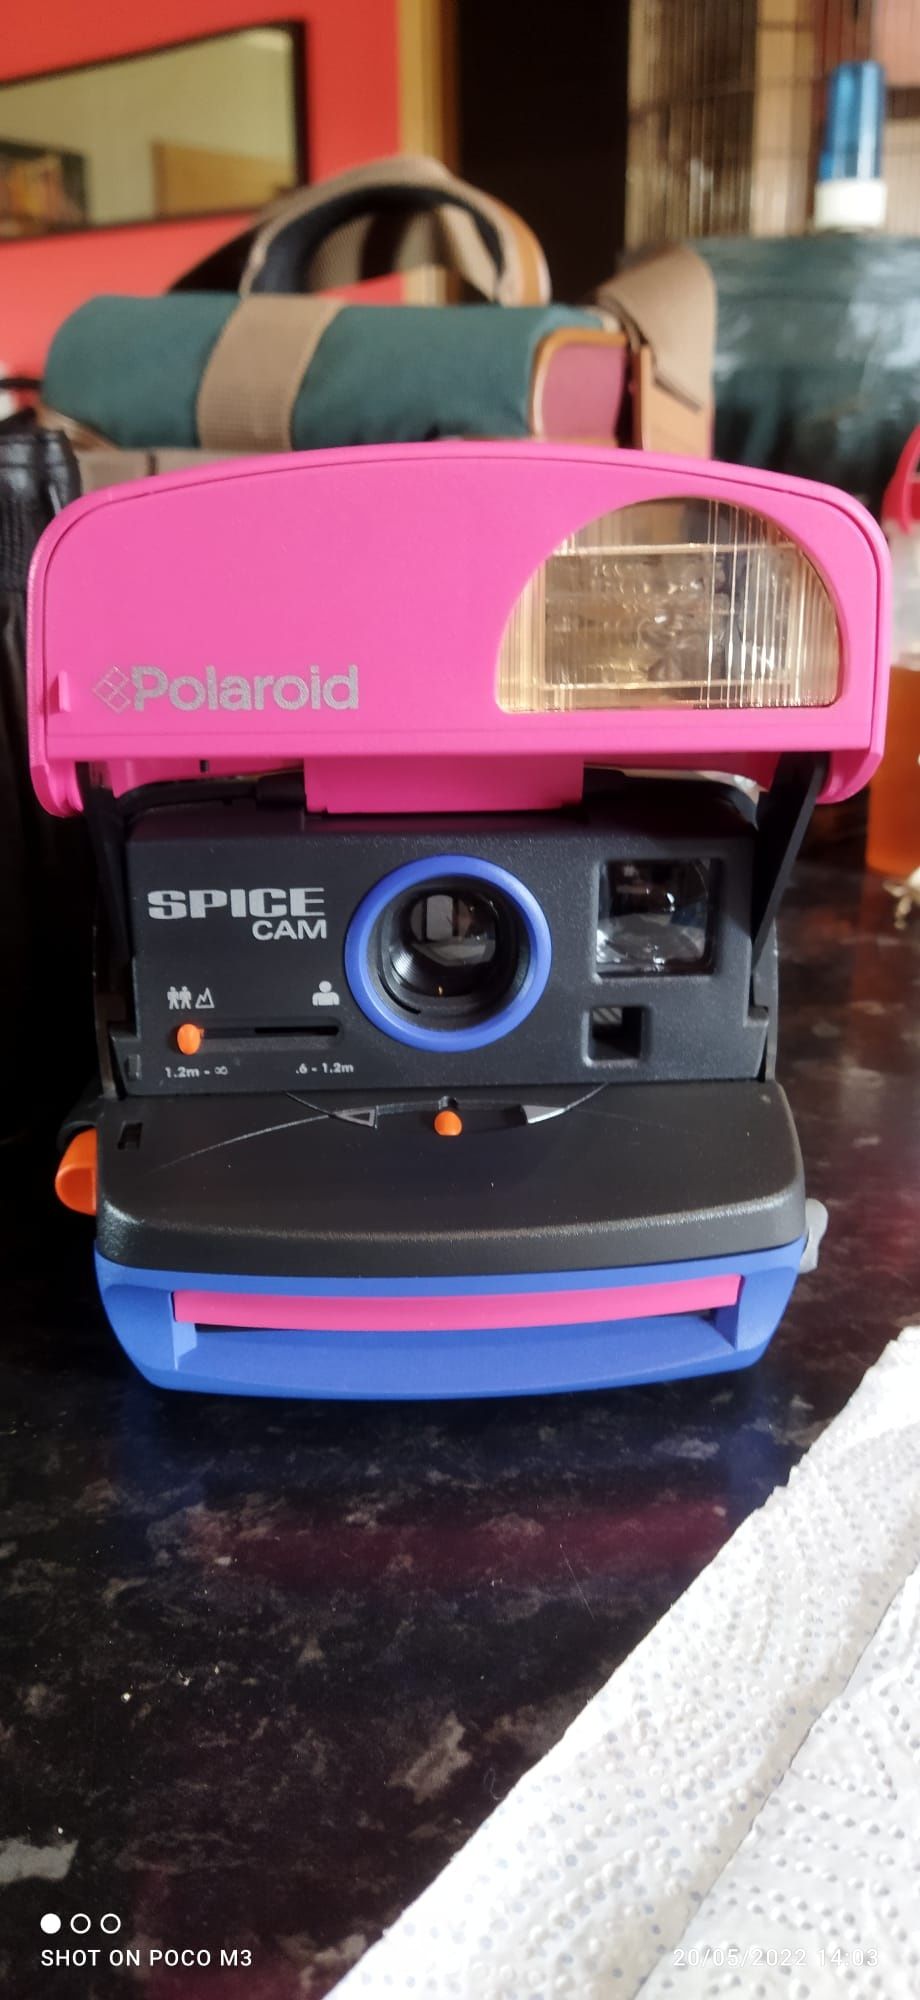 Máquina fotográfica Polaroid Spice Cam